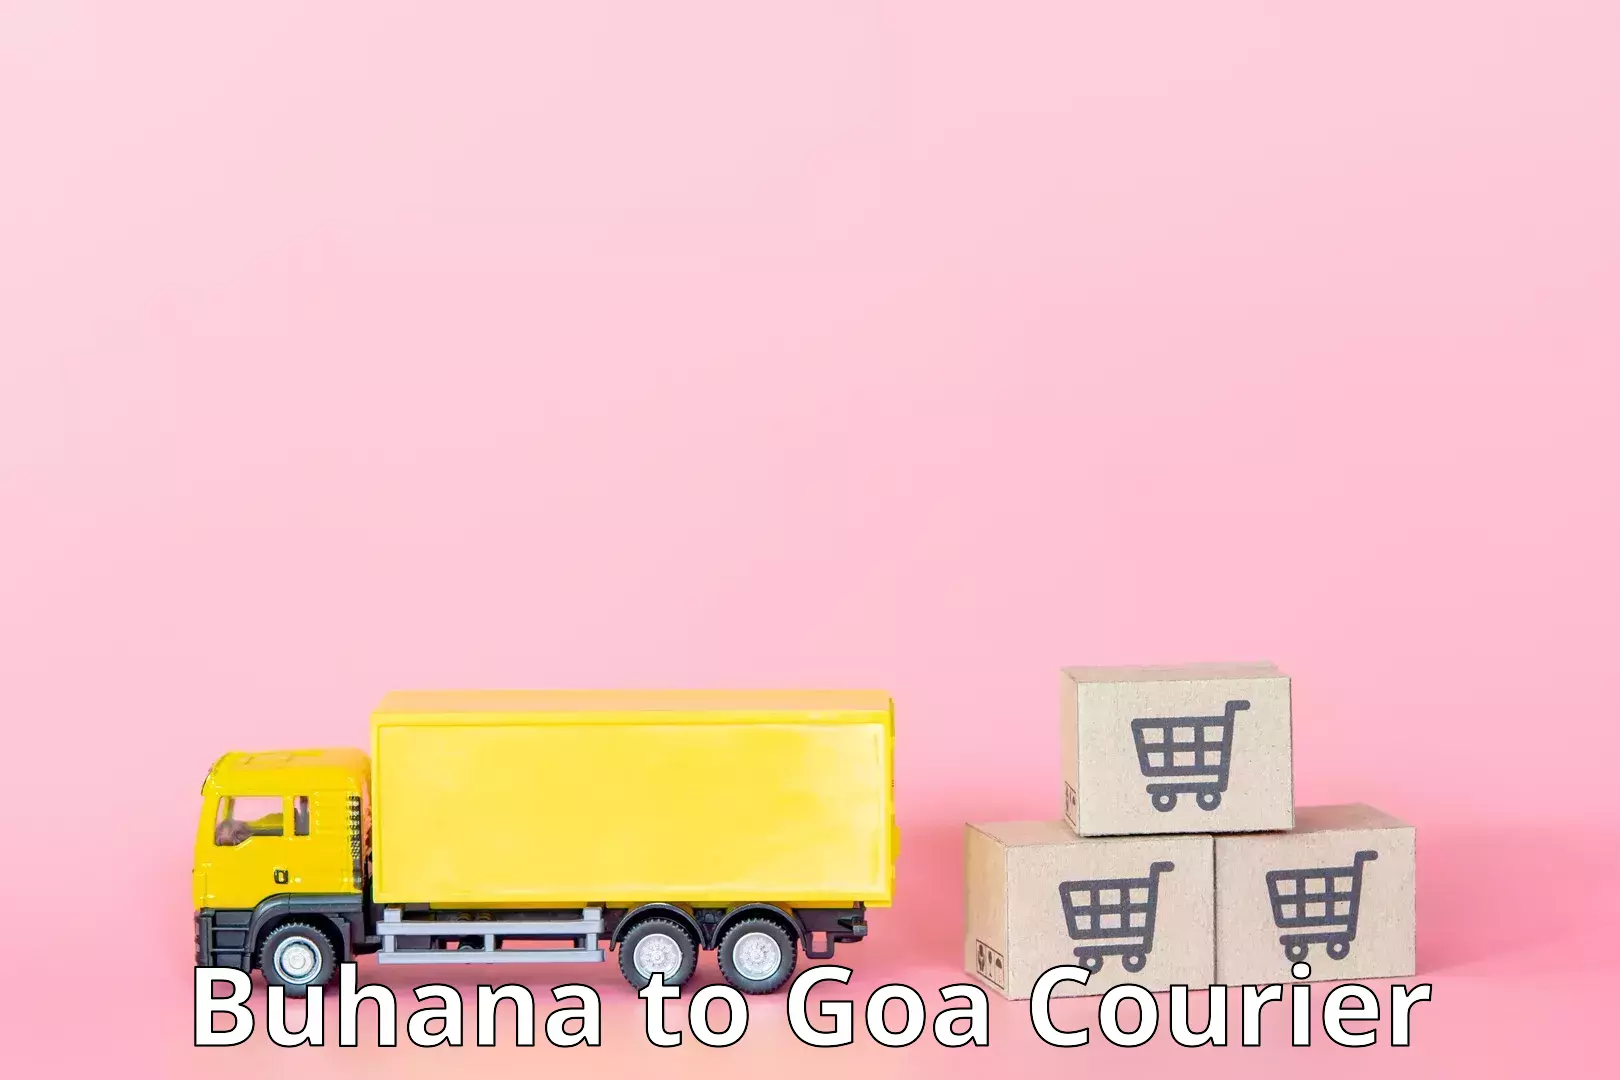 Reliable courier service Buhana to Mormugao Port